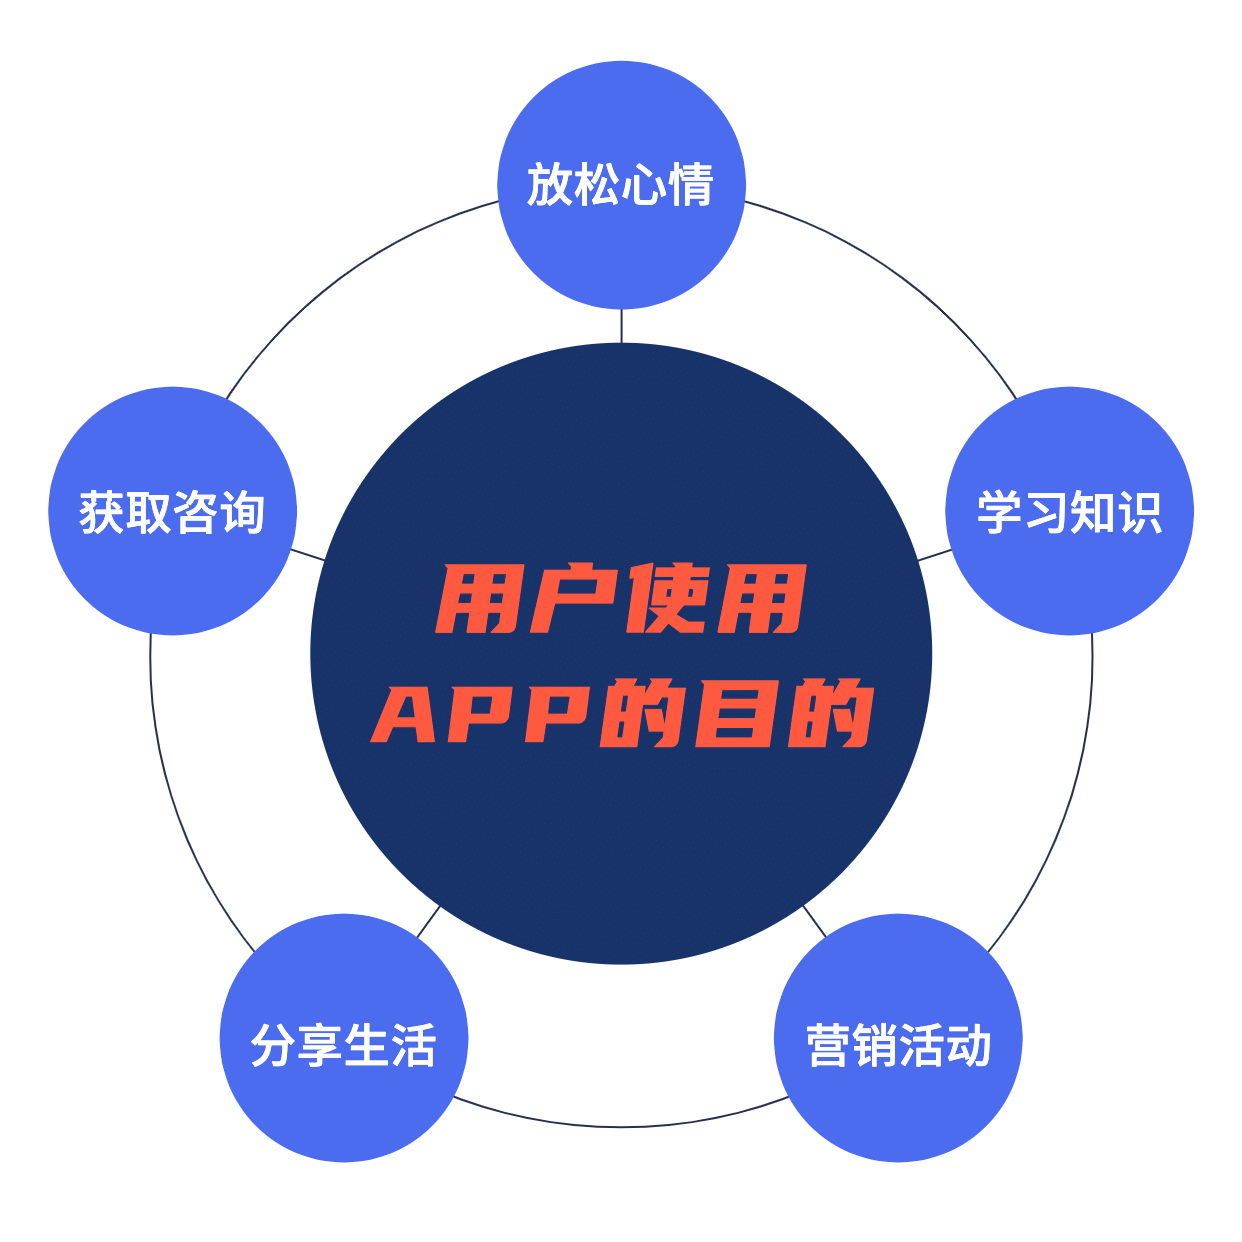 用户使用APP目的图表方形海报预览效果